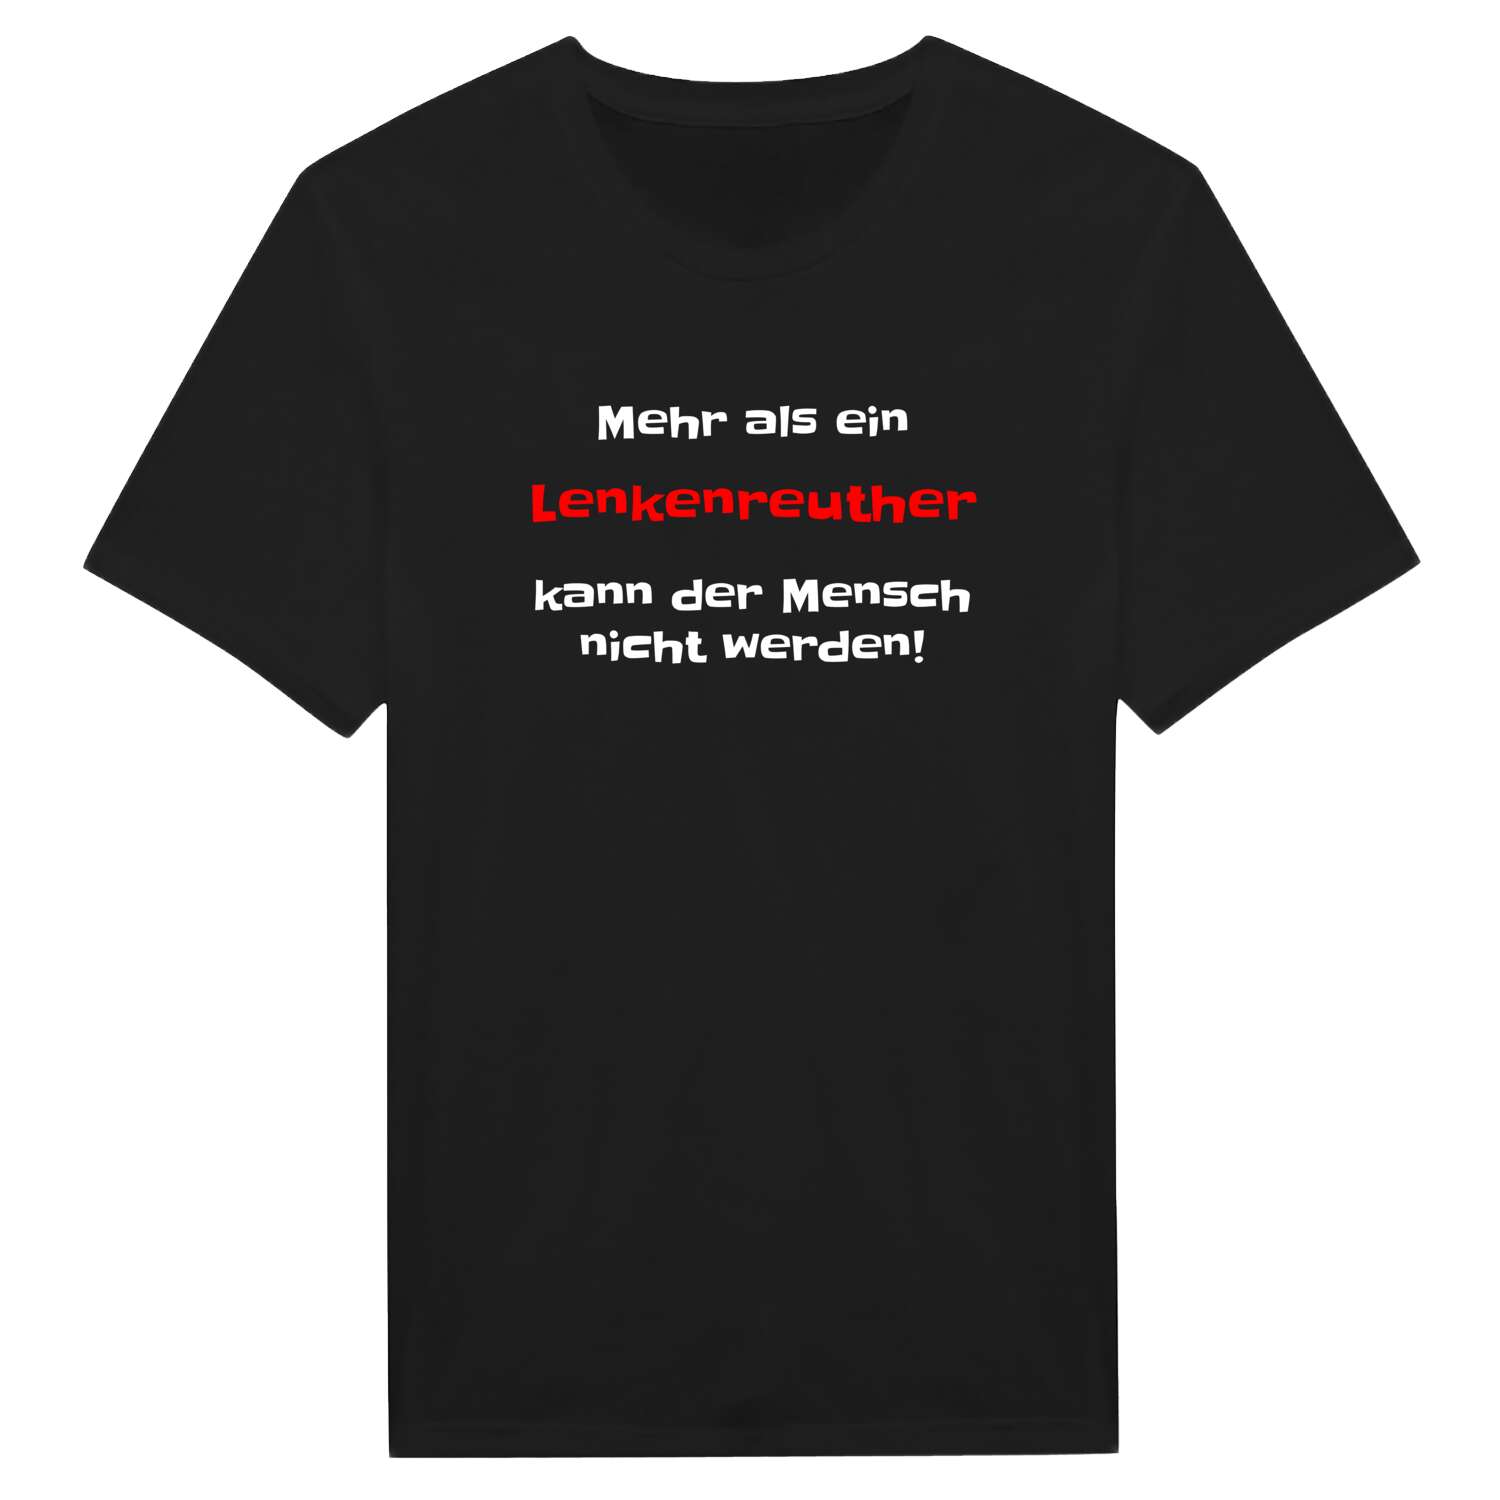 Lenkenreuth T-Shirt »Mehr als ein«